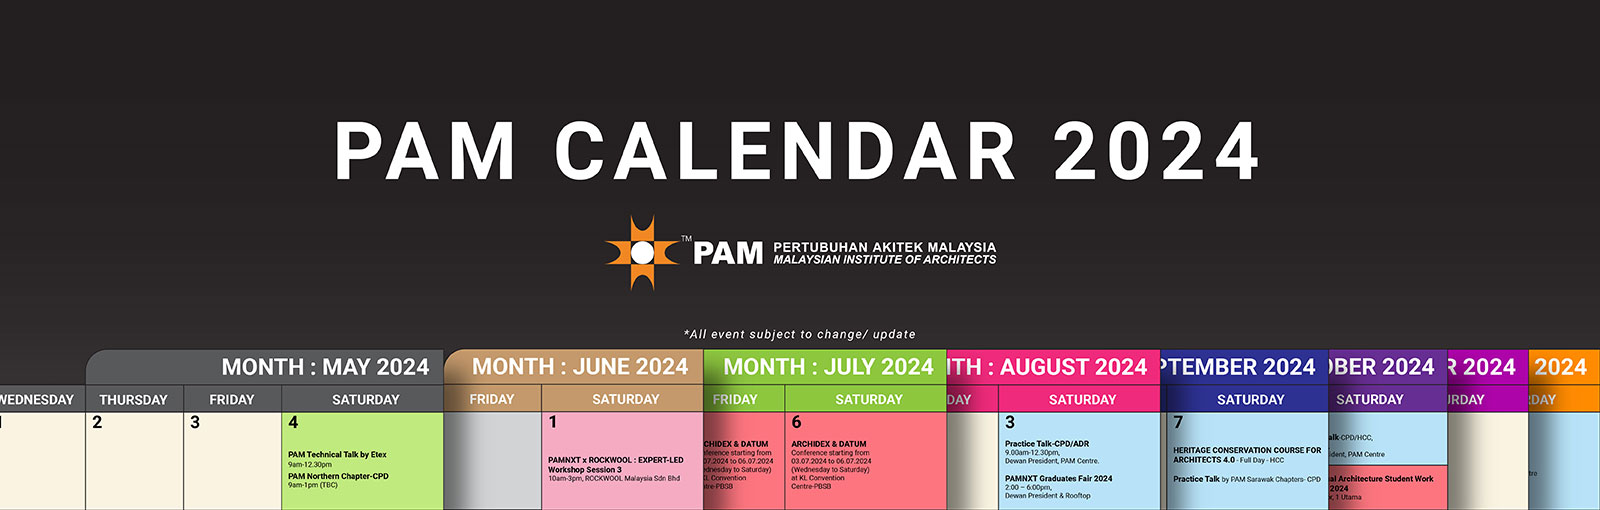 PAM Calendar 2024